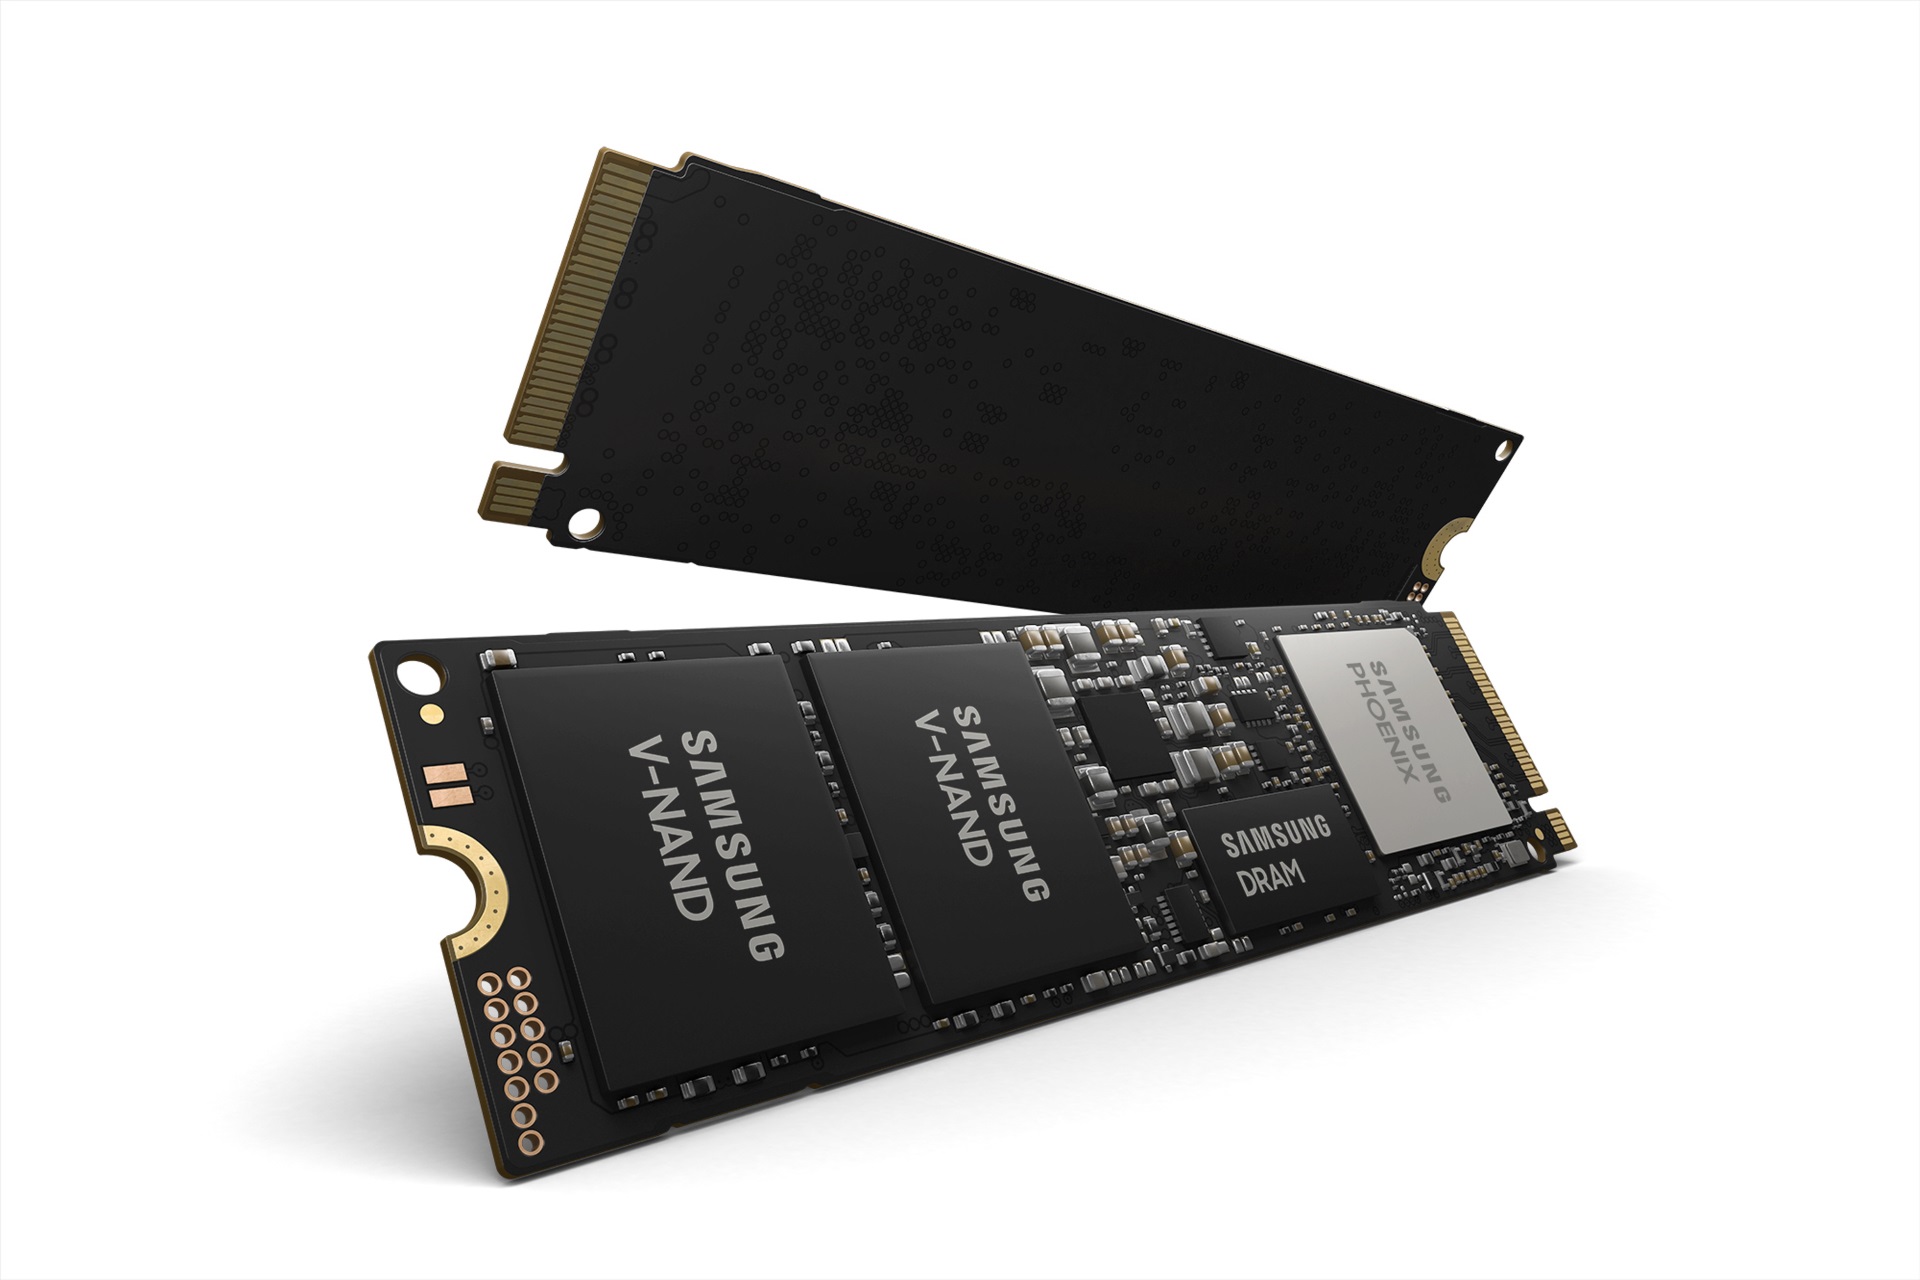 Le SSD Samsung 970 EVO Plus 2 To est proposé avec une réduction importante